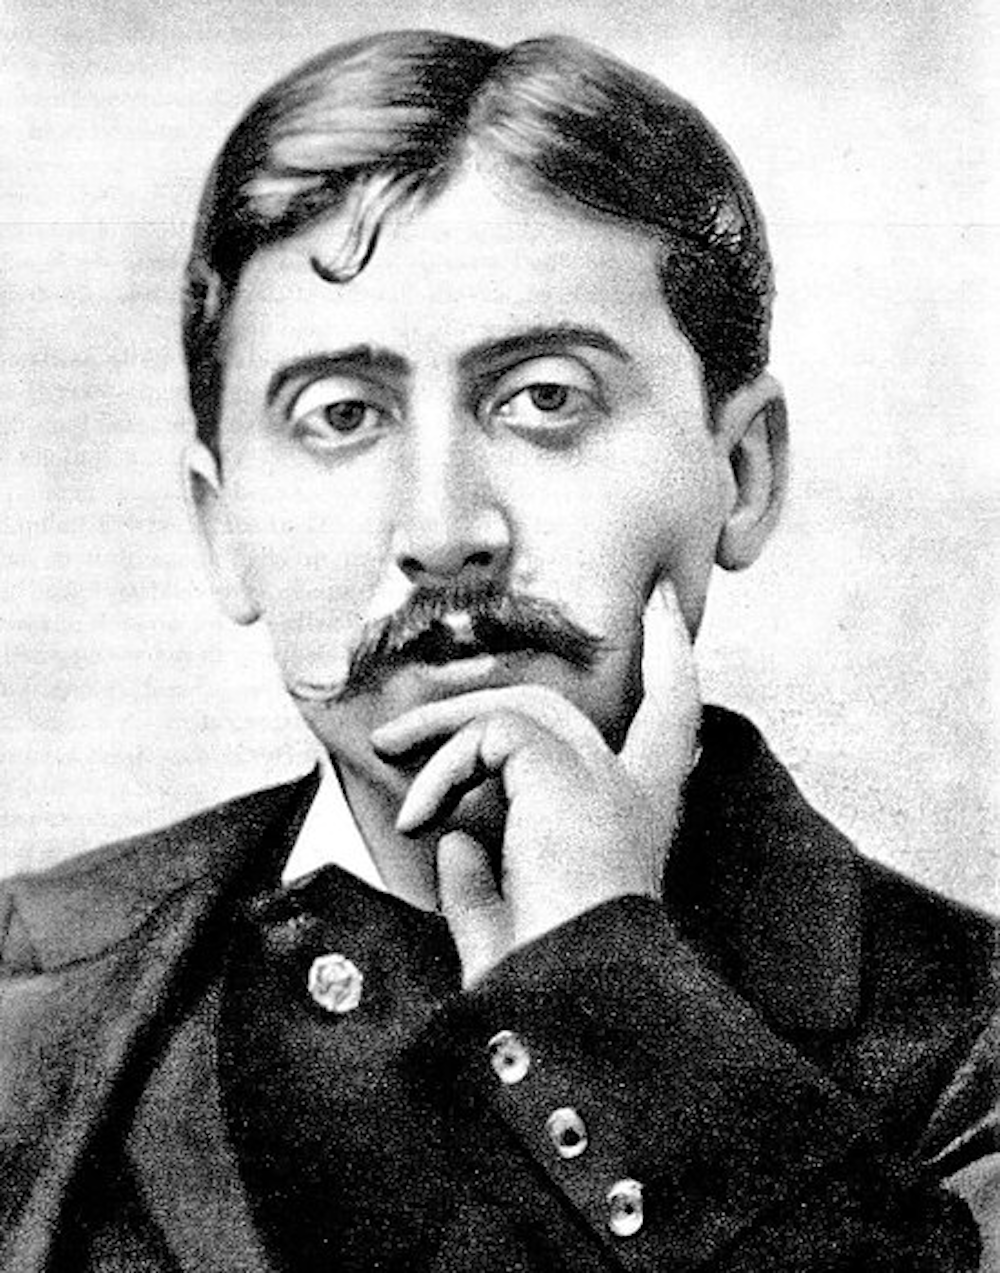 Ces neuf textes, rédigés alors que Proust était âgé d'une vingtaine d'années, auraient dû figurer dans son premier livre, "Les plaisirs et les jours" (1896). Elles avaient finalement été écartées par l'auteur.

